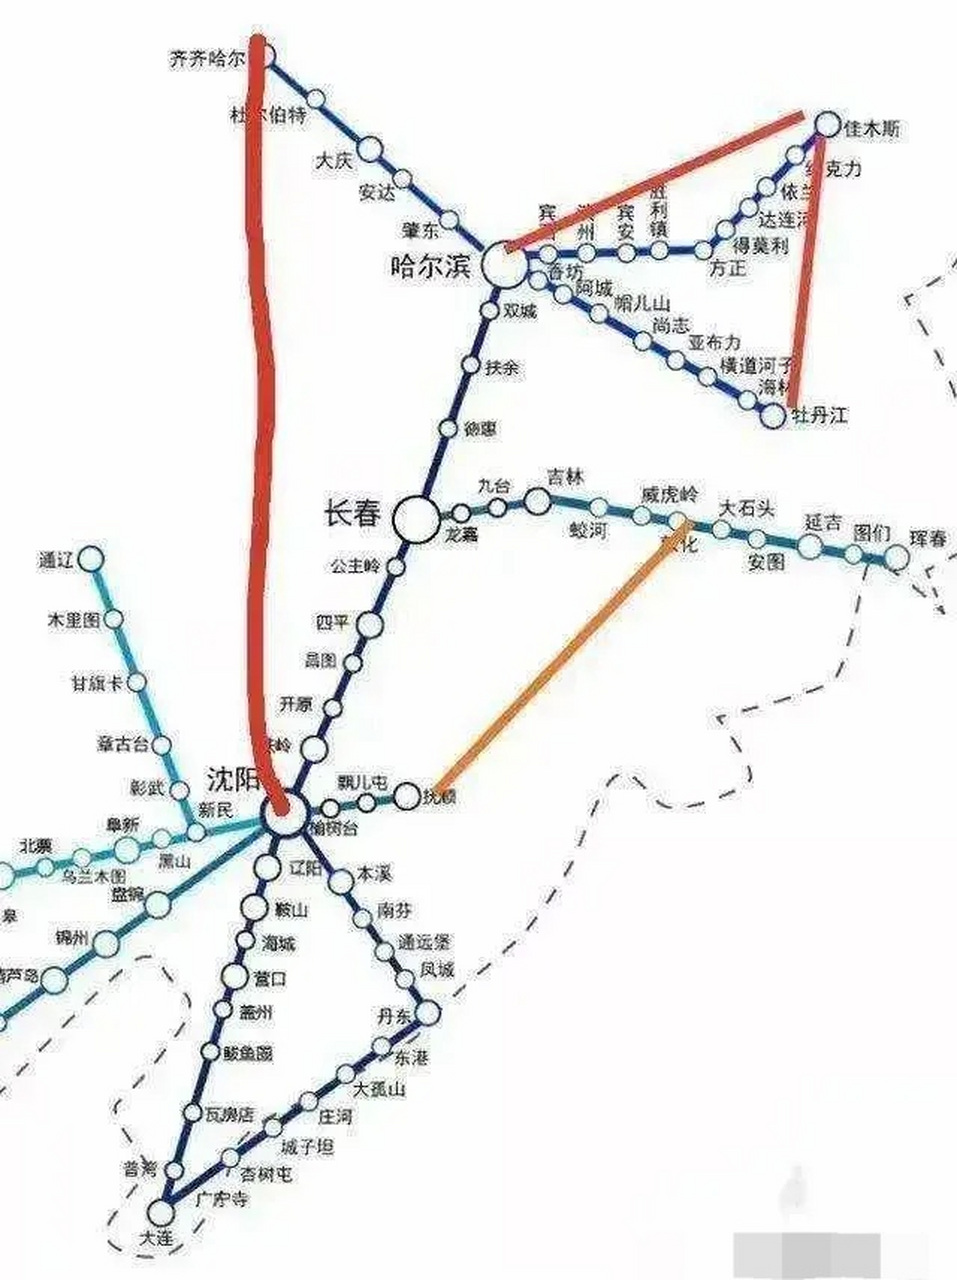 吉林铁路线路图高清图图片